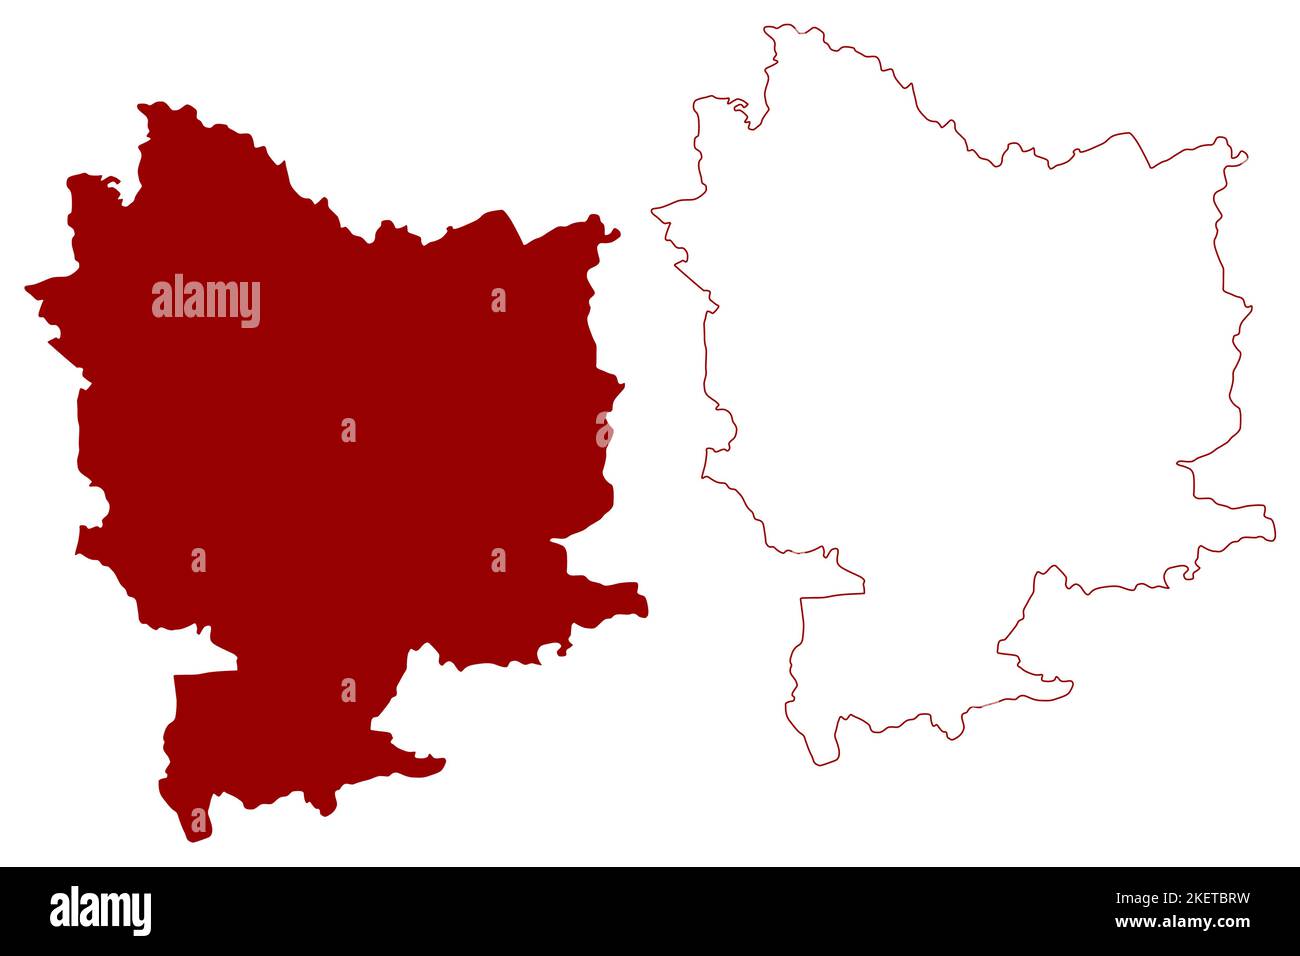 Selby nicht-Metropolregion (Vereinigtes Königreich von Großbritannien und Nordirland, zeremonielle Grafschaft North Yorkshire, England) Kartenvektor Illustration Stock Vektor